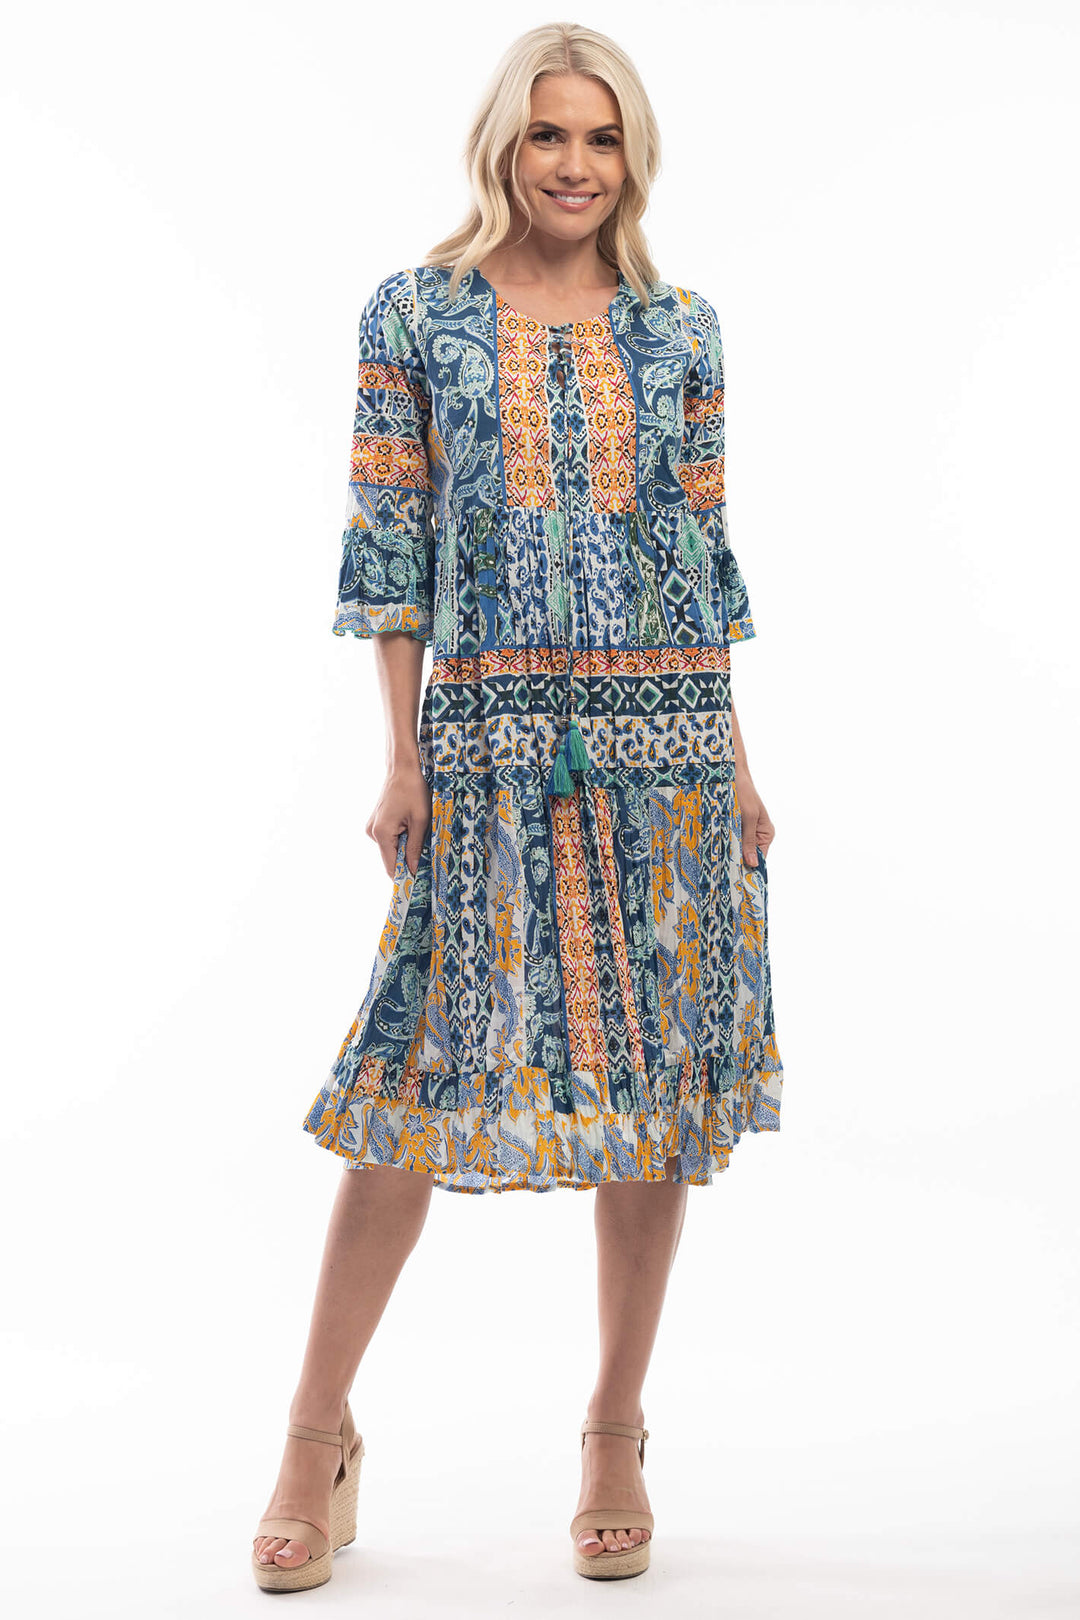 Orientique 6133 Agatti Blue Midi Dress - Experience Boutique